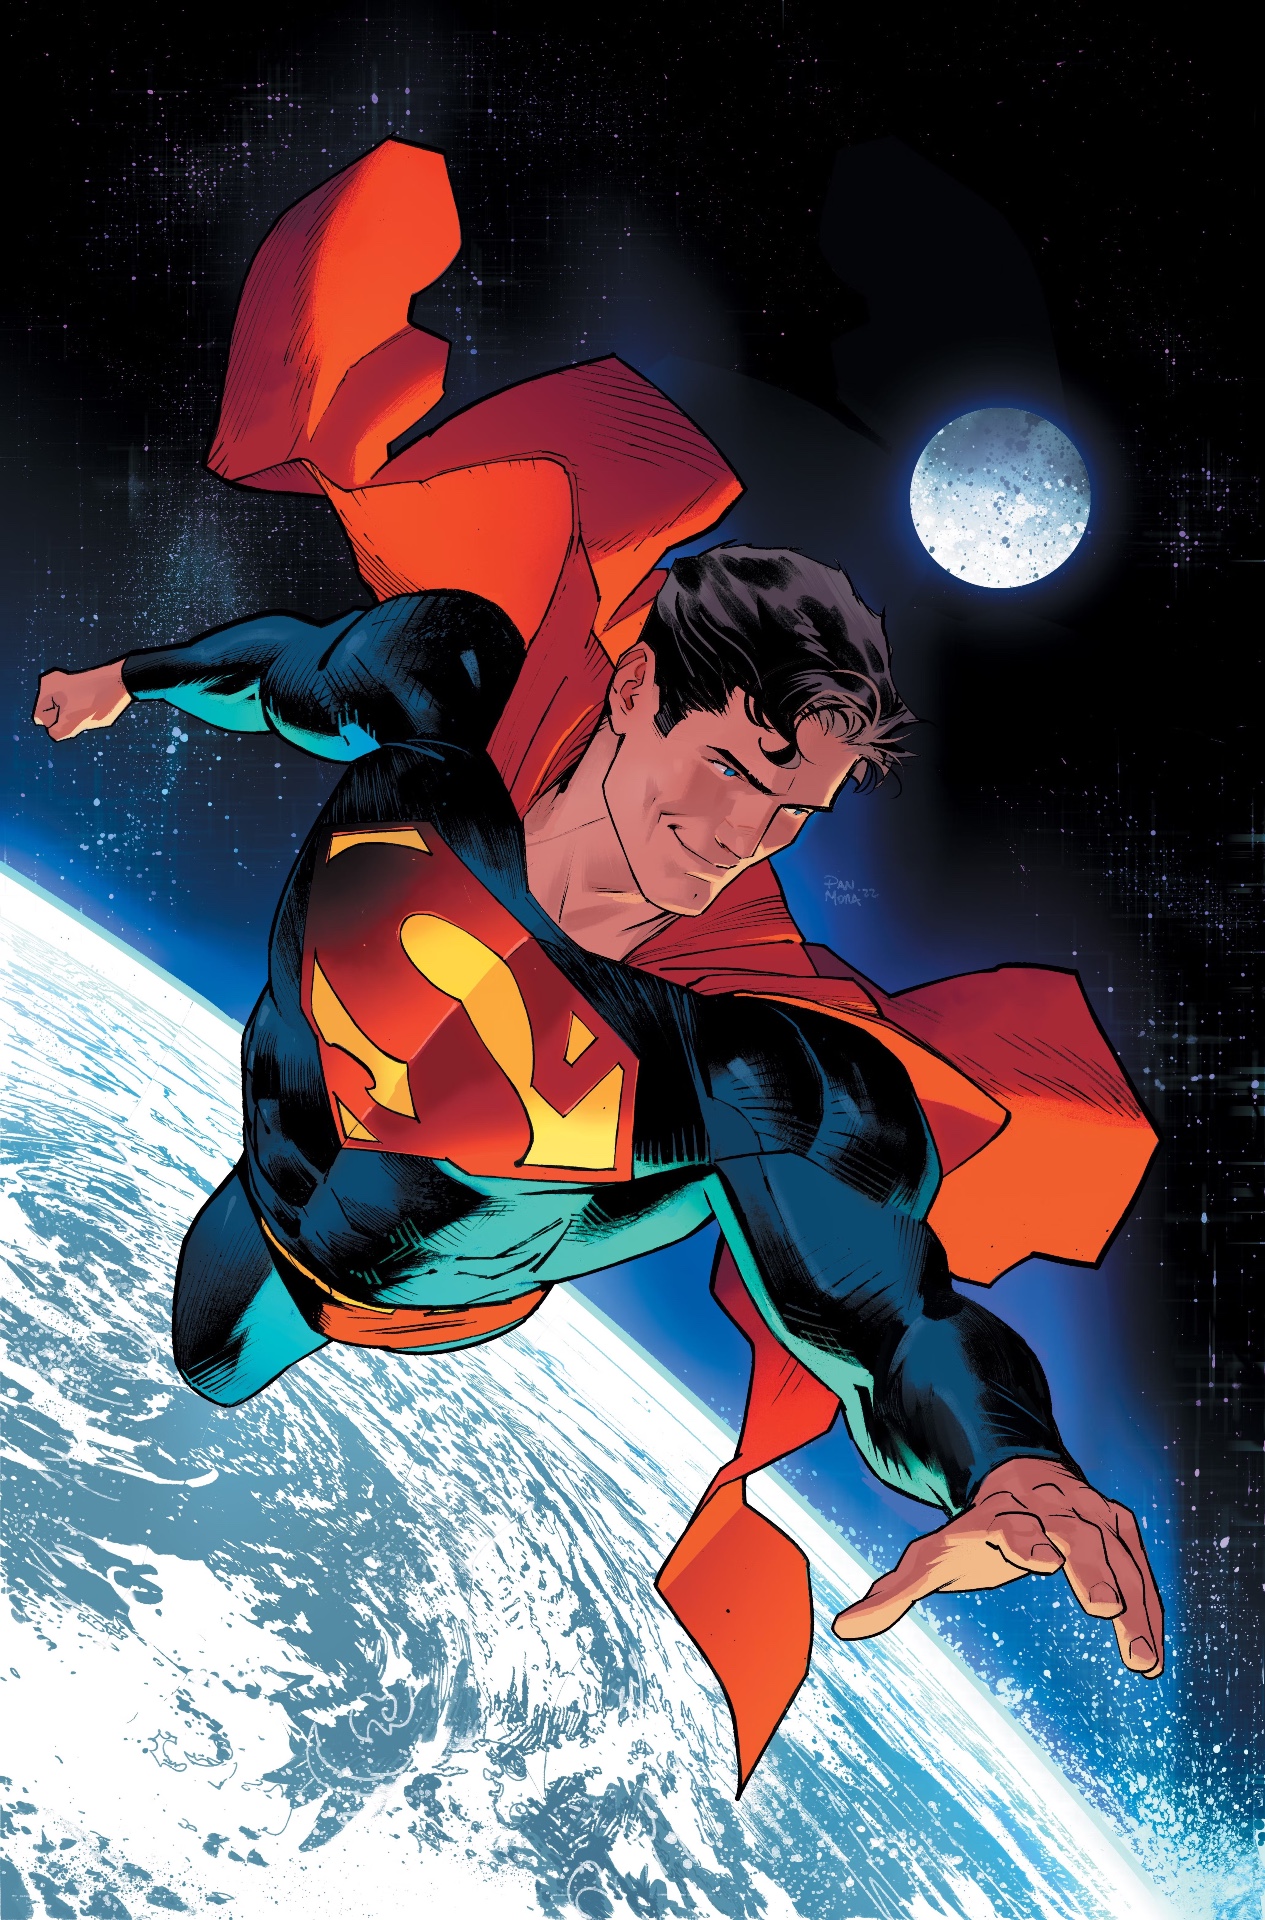 Supermna: Kal-El Returns